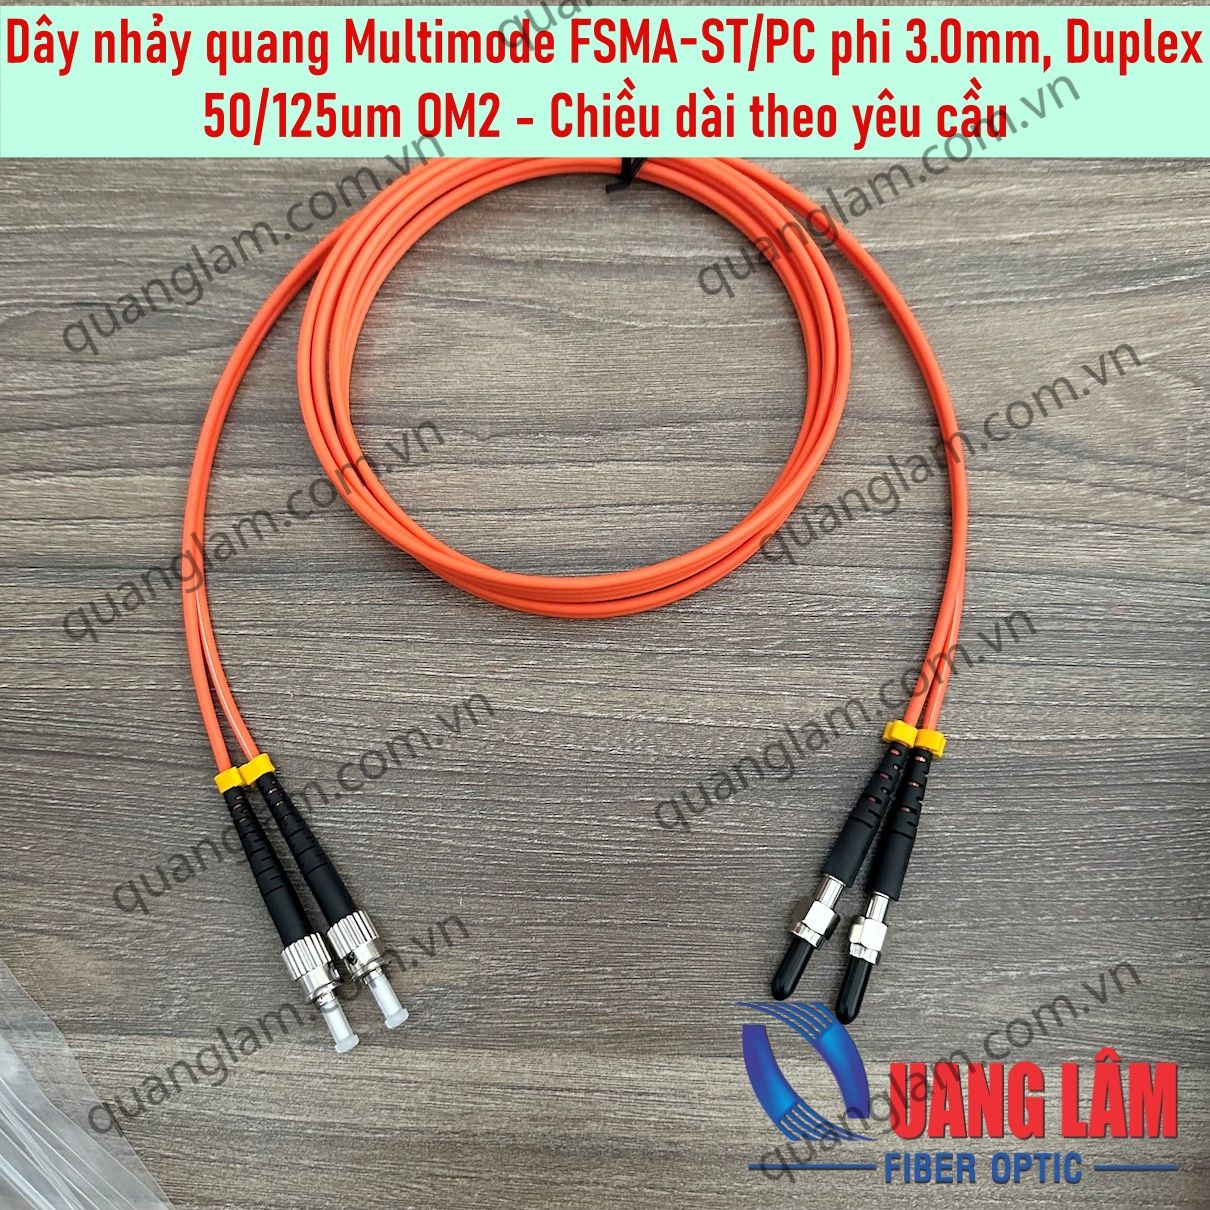 Dây nhảy quang Multimode 50/125um FSMA-ST/PC phi 3.0mm, Duplex - Chiều dài theo yêu cầu